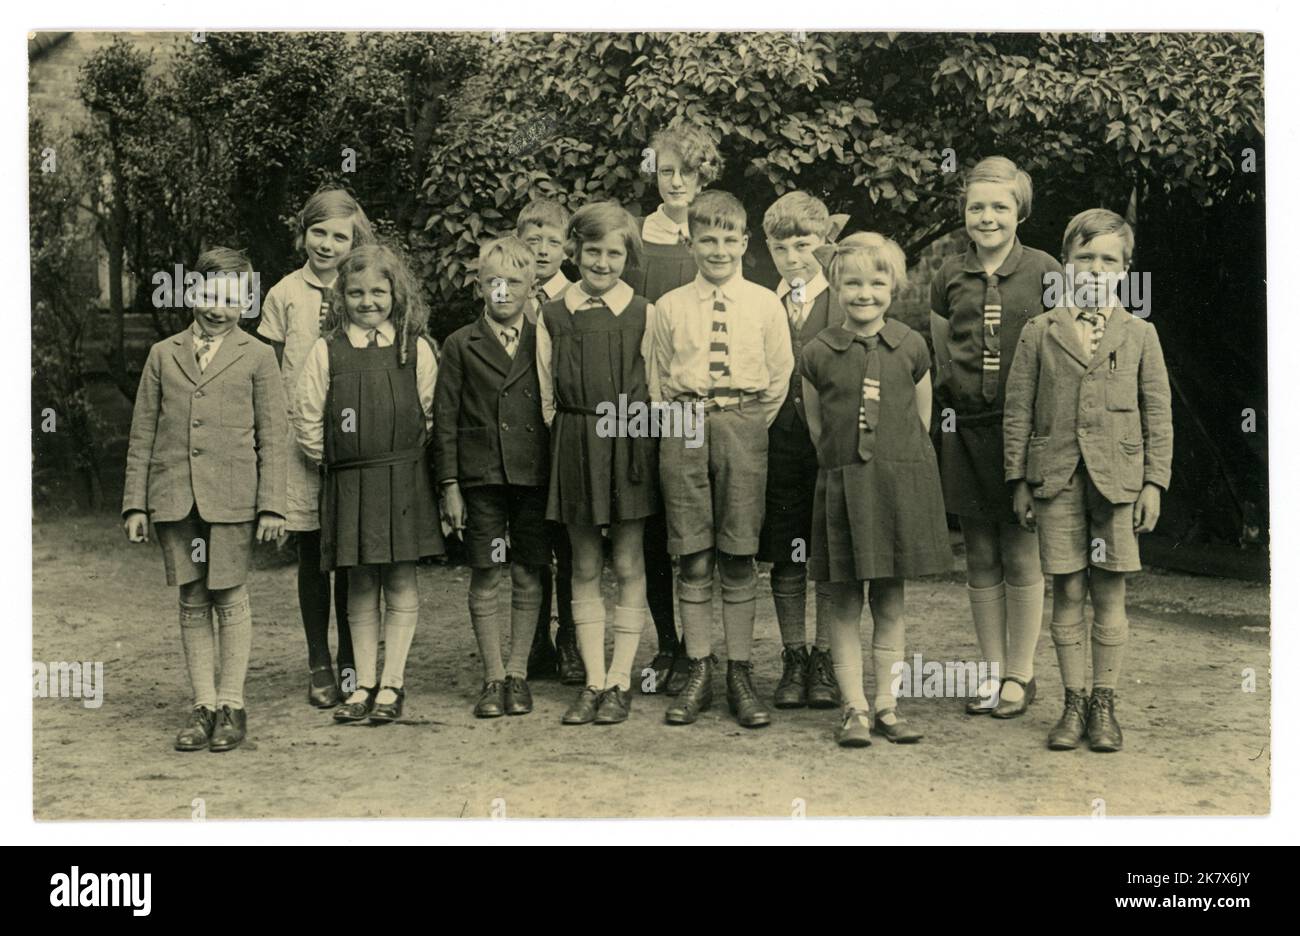 Originale, molto chiaro, cartolina, dall'era WW2, 1920's, 1930's era di gruppo dei bambini della scuola che propongono per una fotografia nella loro uniforme della scuola fuori. REGNO UNITO Foto Stock